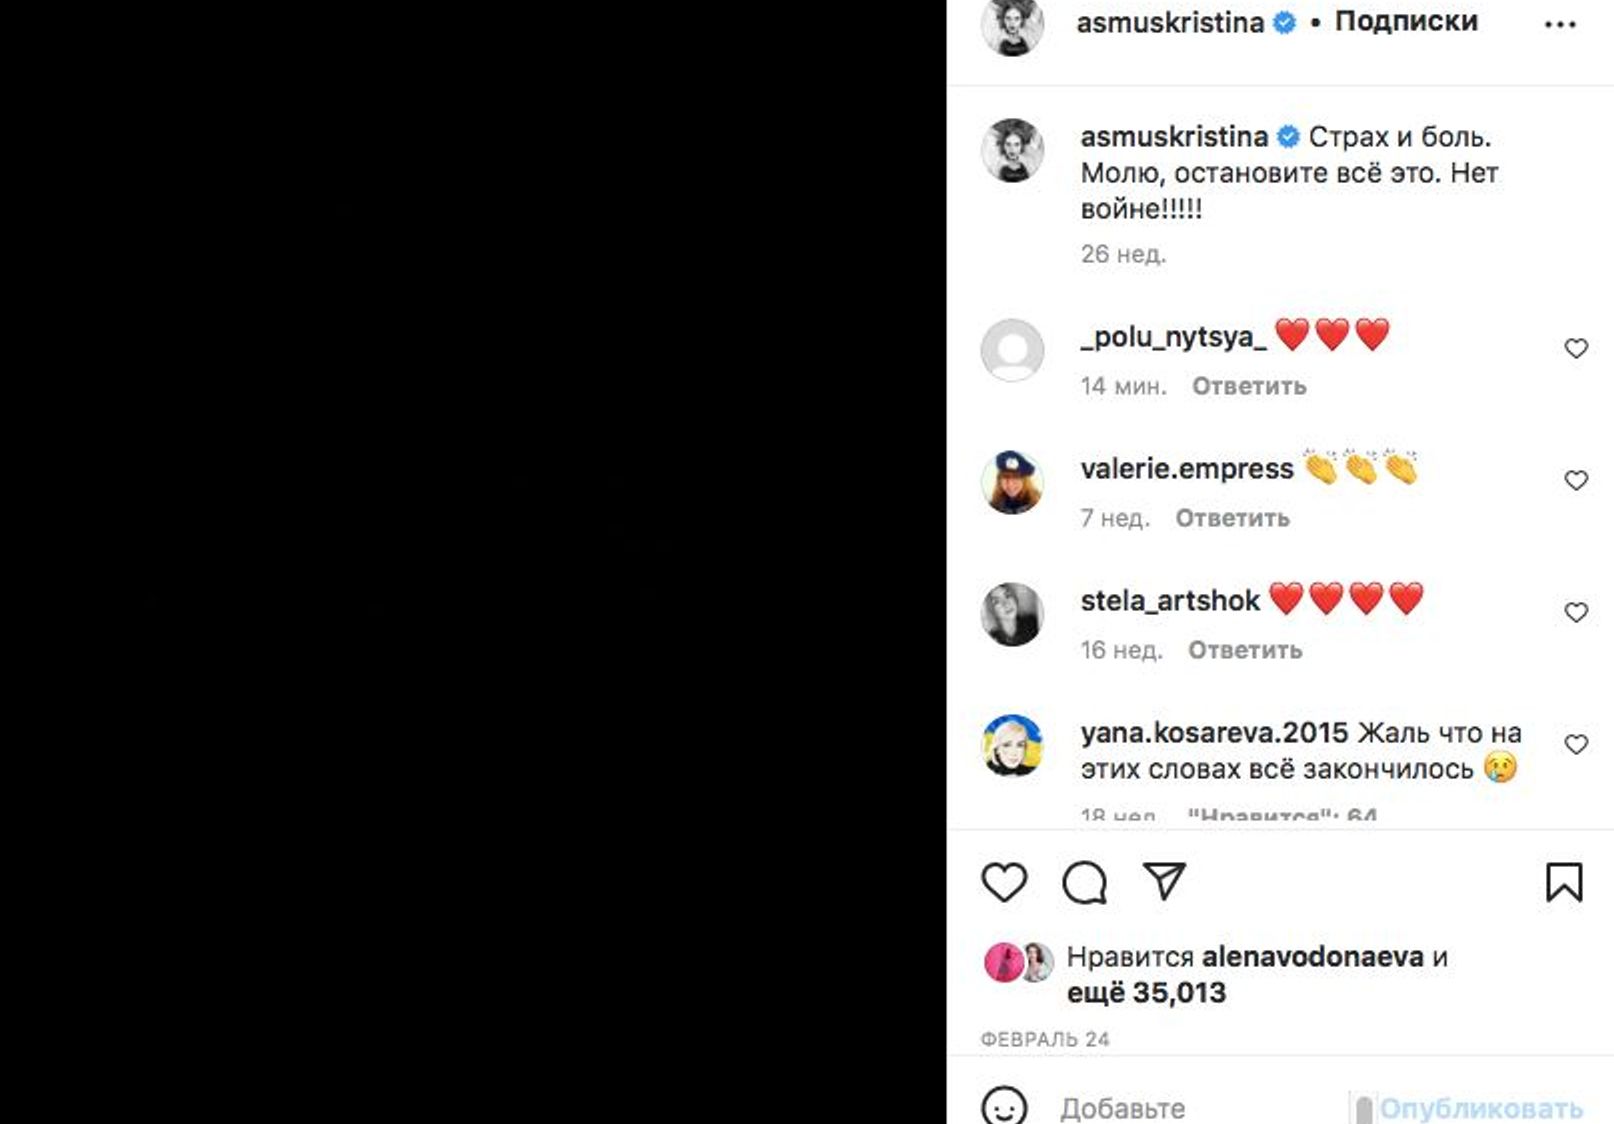 Актриса Кристина Асмус удалила антивоенный пост, из-за которого ей грозит штраф. Ее адвокат намекнул, что она поддерживает войну